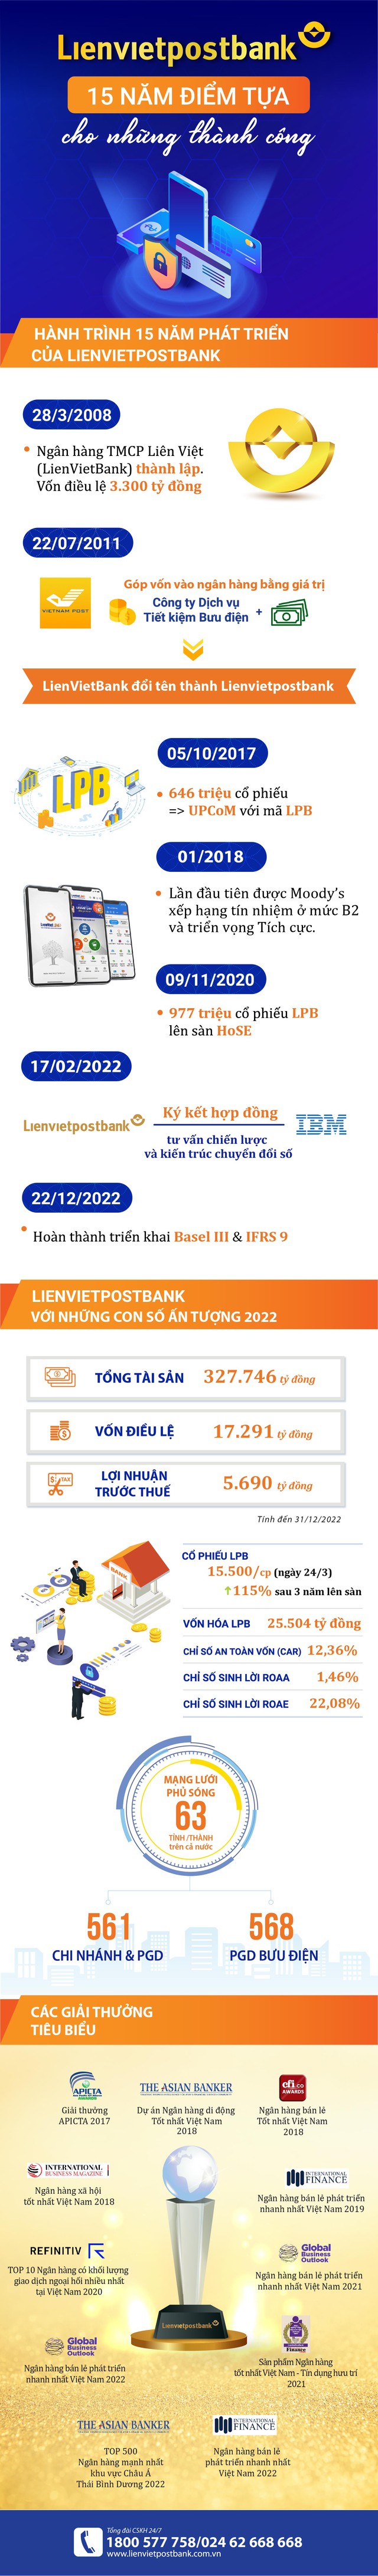 Lienvietpostbank: Nhìn lại 15 năm mở rộng quy mô, lợi nhuận tăng trưởng đột phá - Ảnh 1.